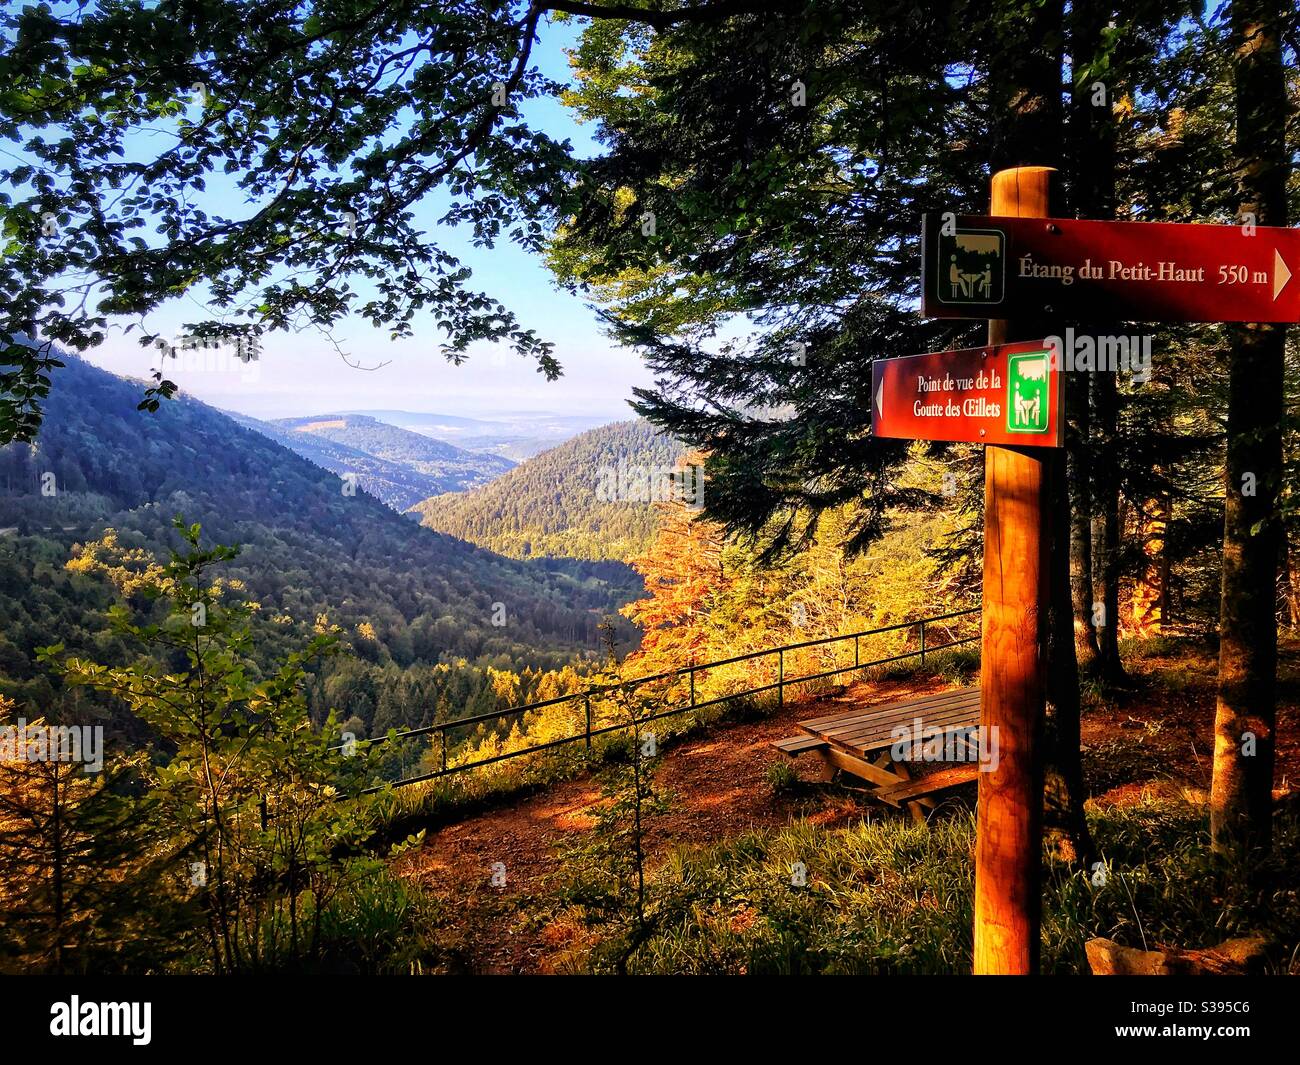 Point de vue Vosges en France Stockfoto